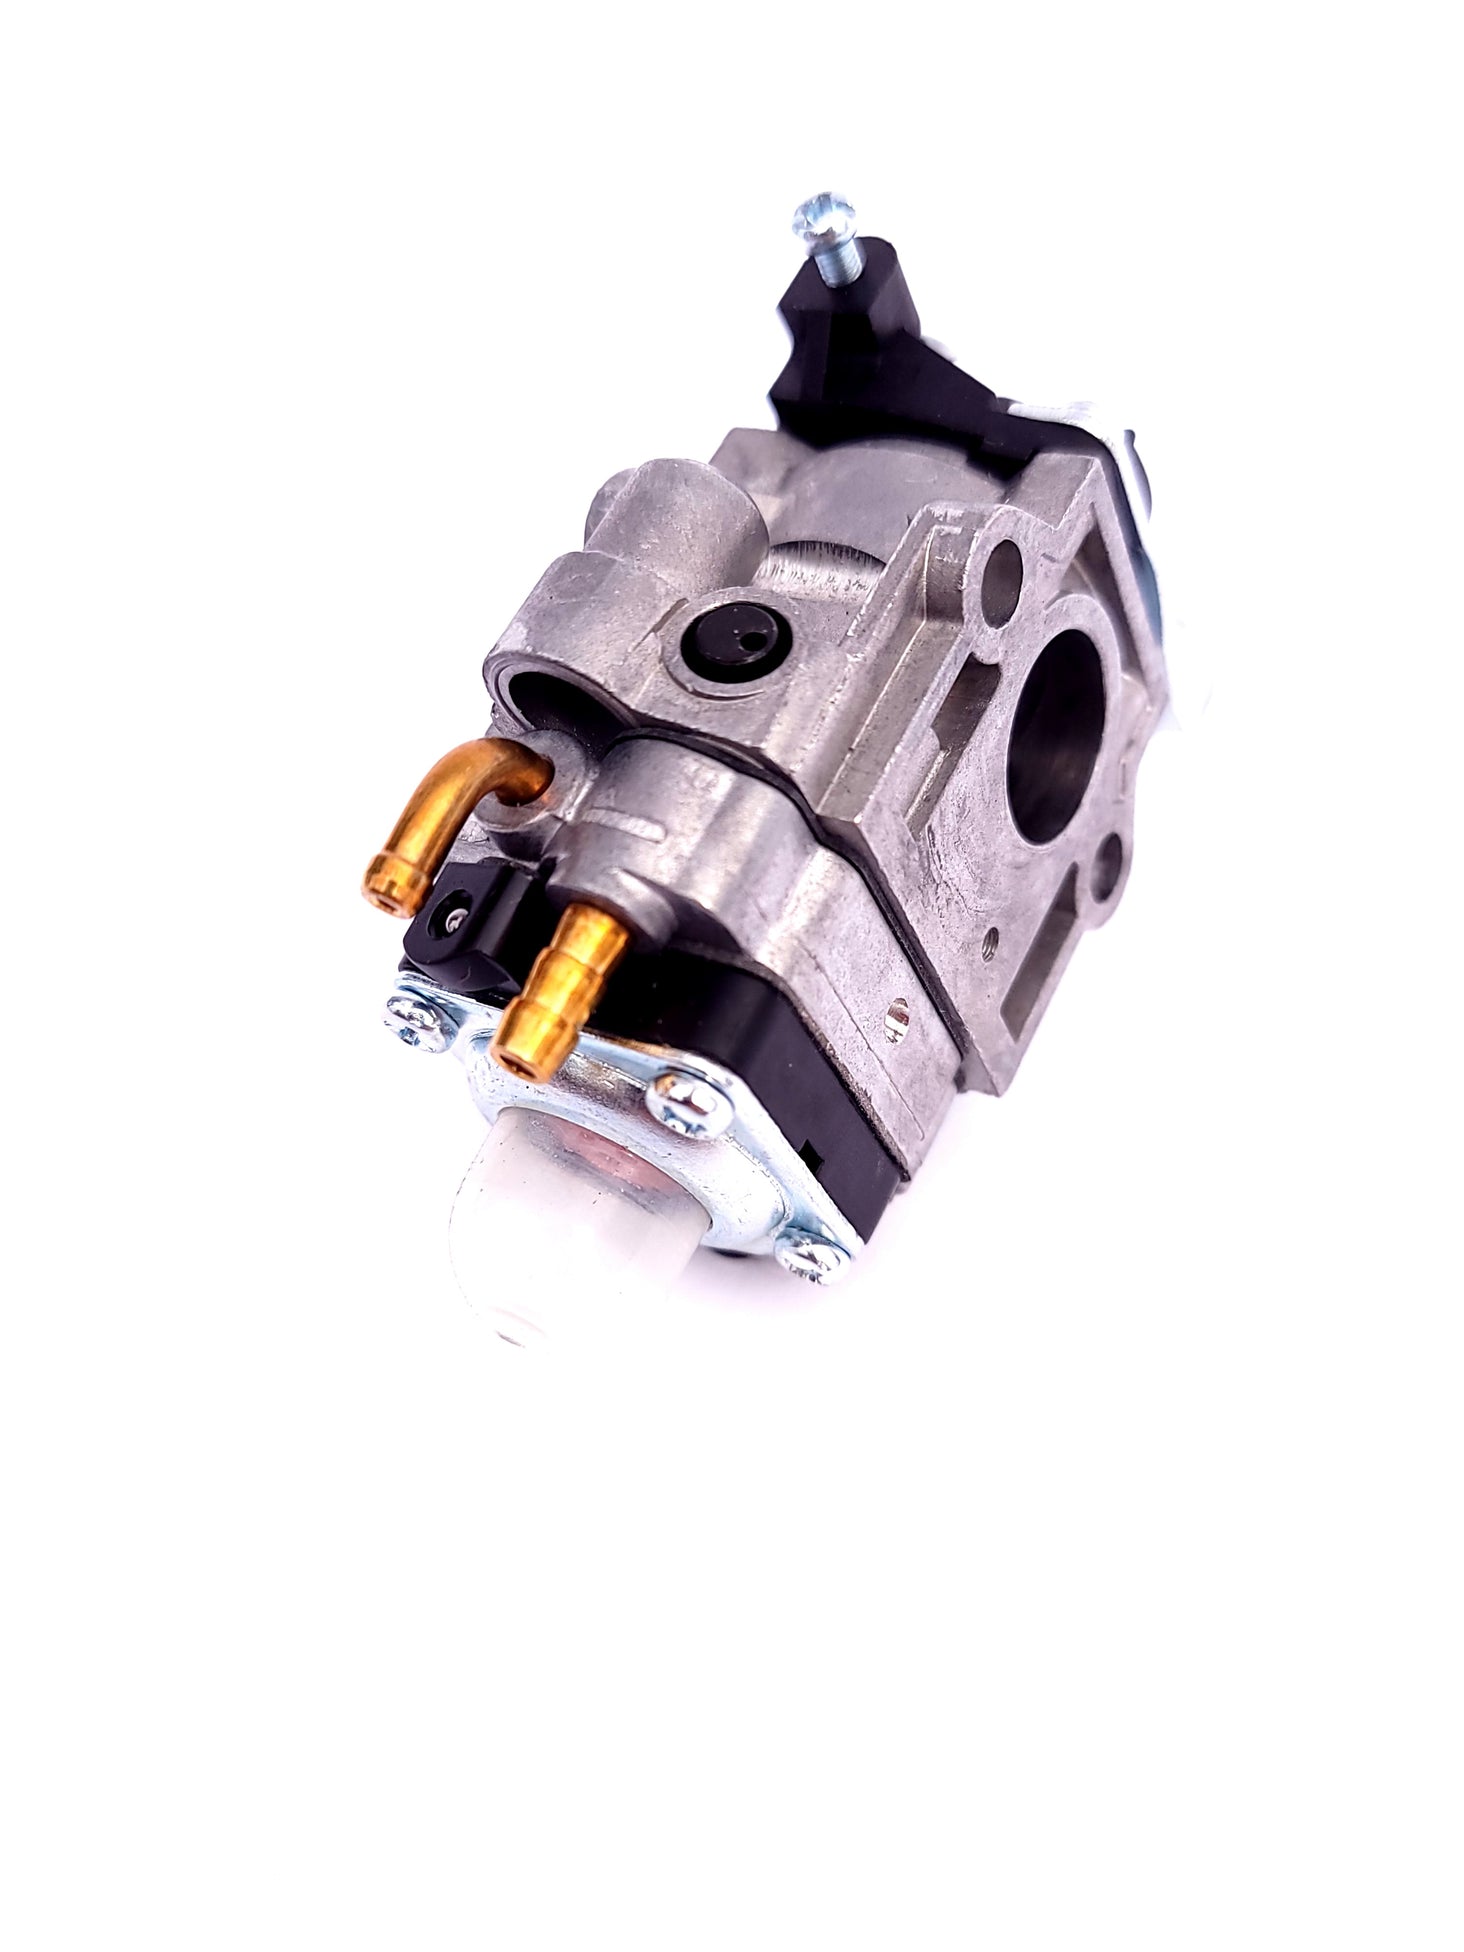 Replacement Carburetor for SCHRÖDER SR-6400L backpack leaf blower